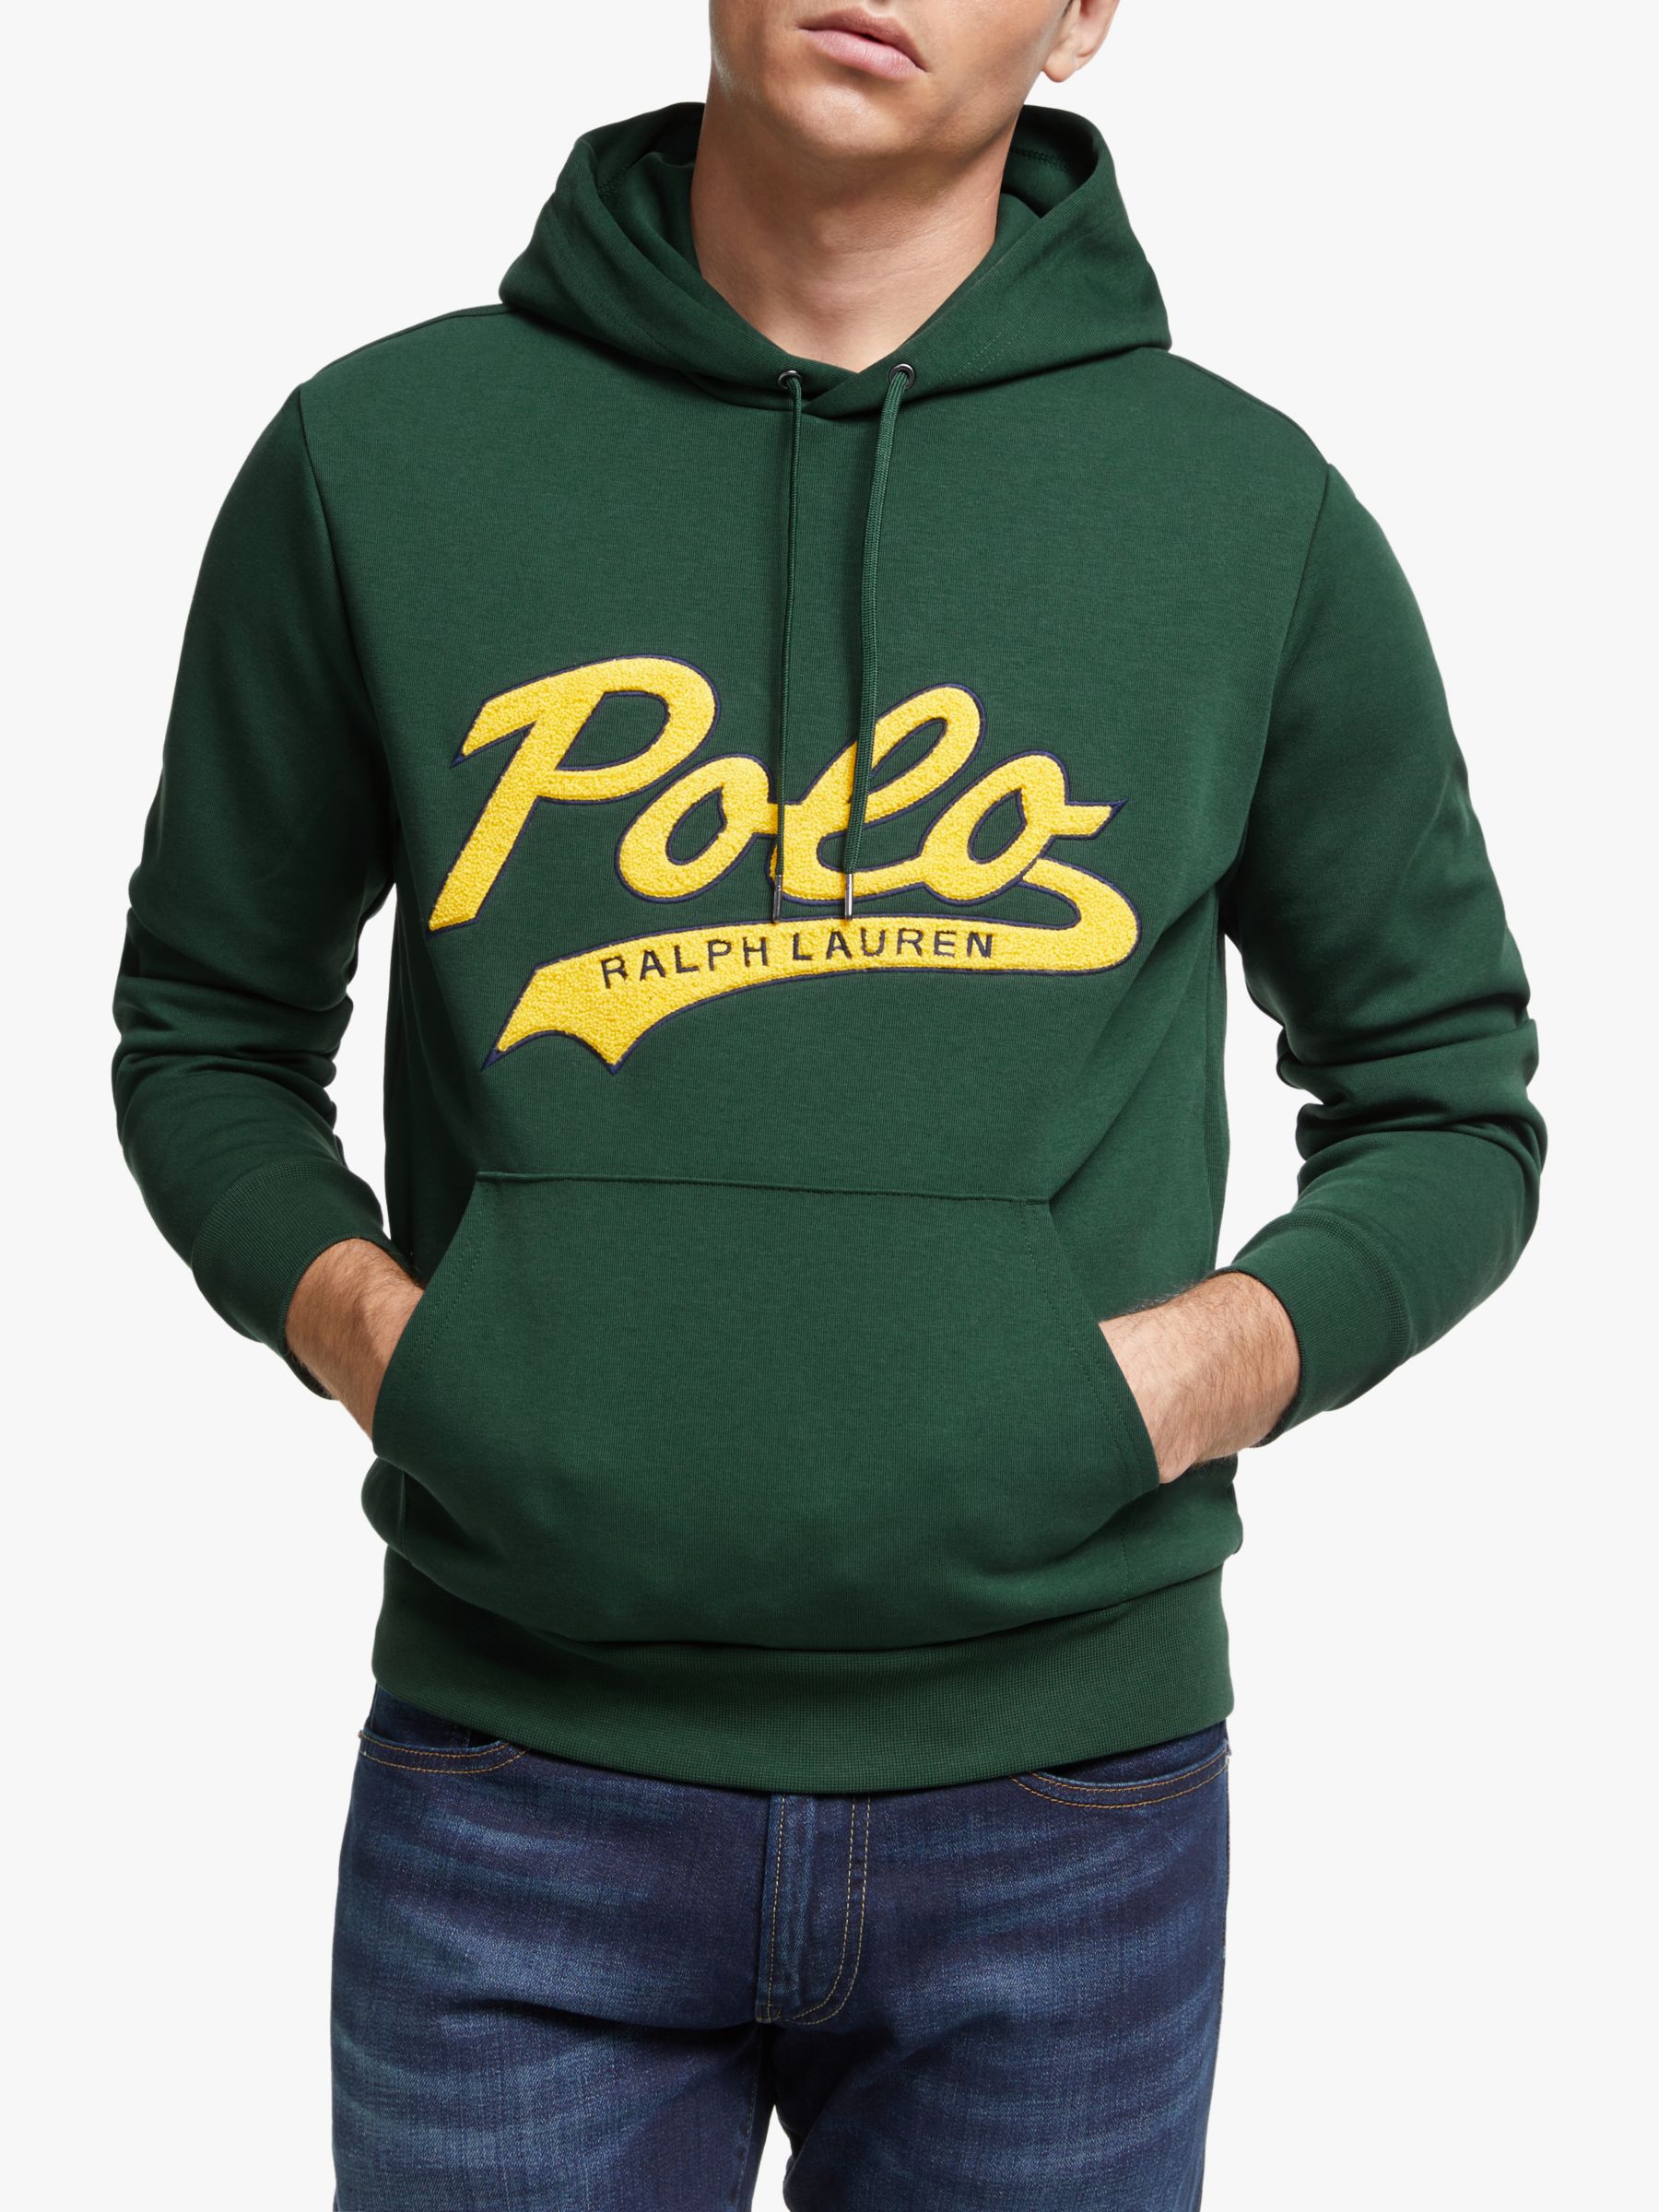 polo ralph lauren green hoodie